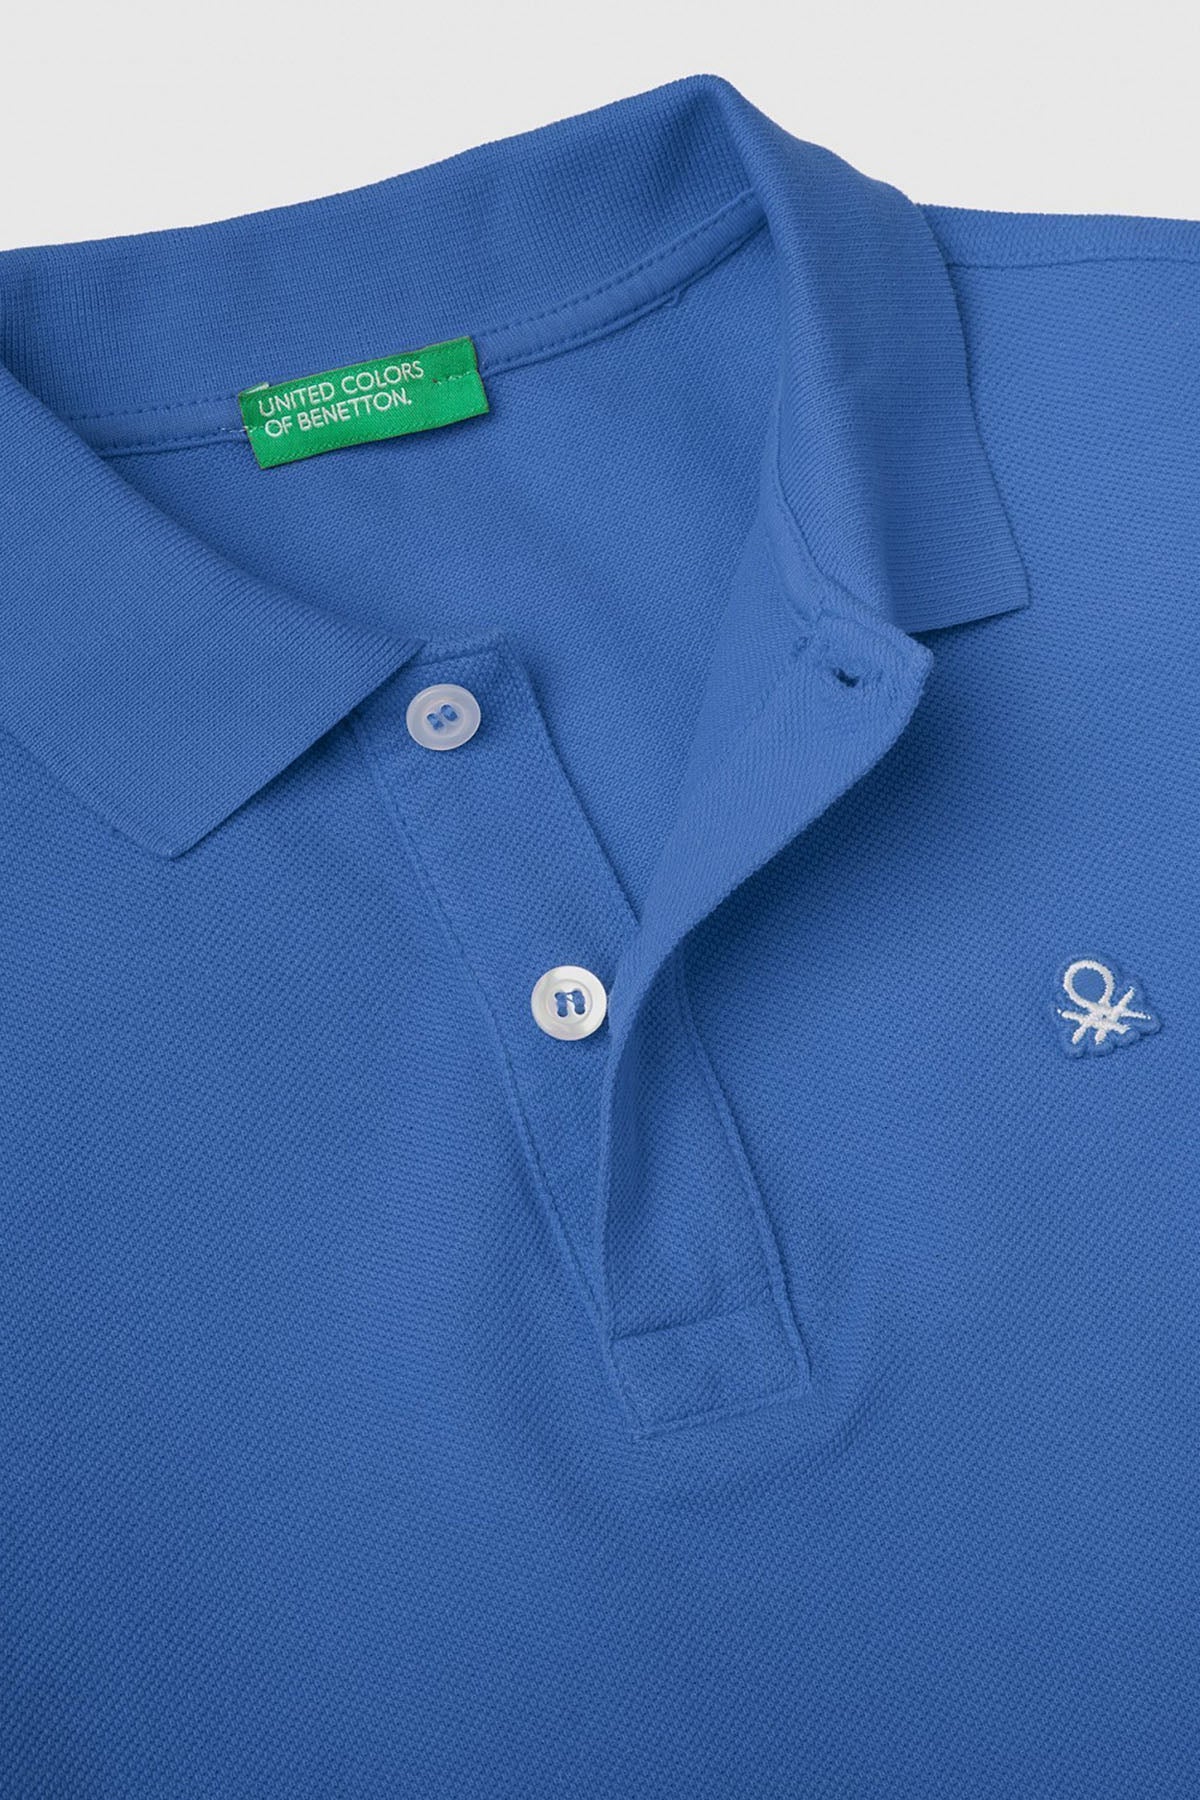 United Colors Of Benetton % 100 Pamuk Erkek Çocuk Polo T Shirt 3089C300Q MAVİ